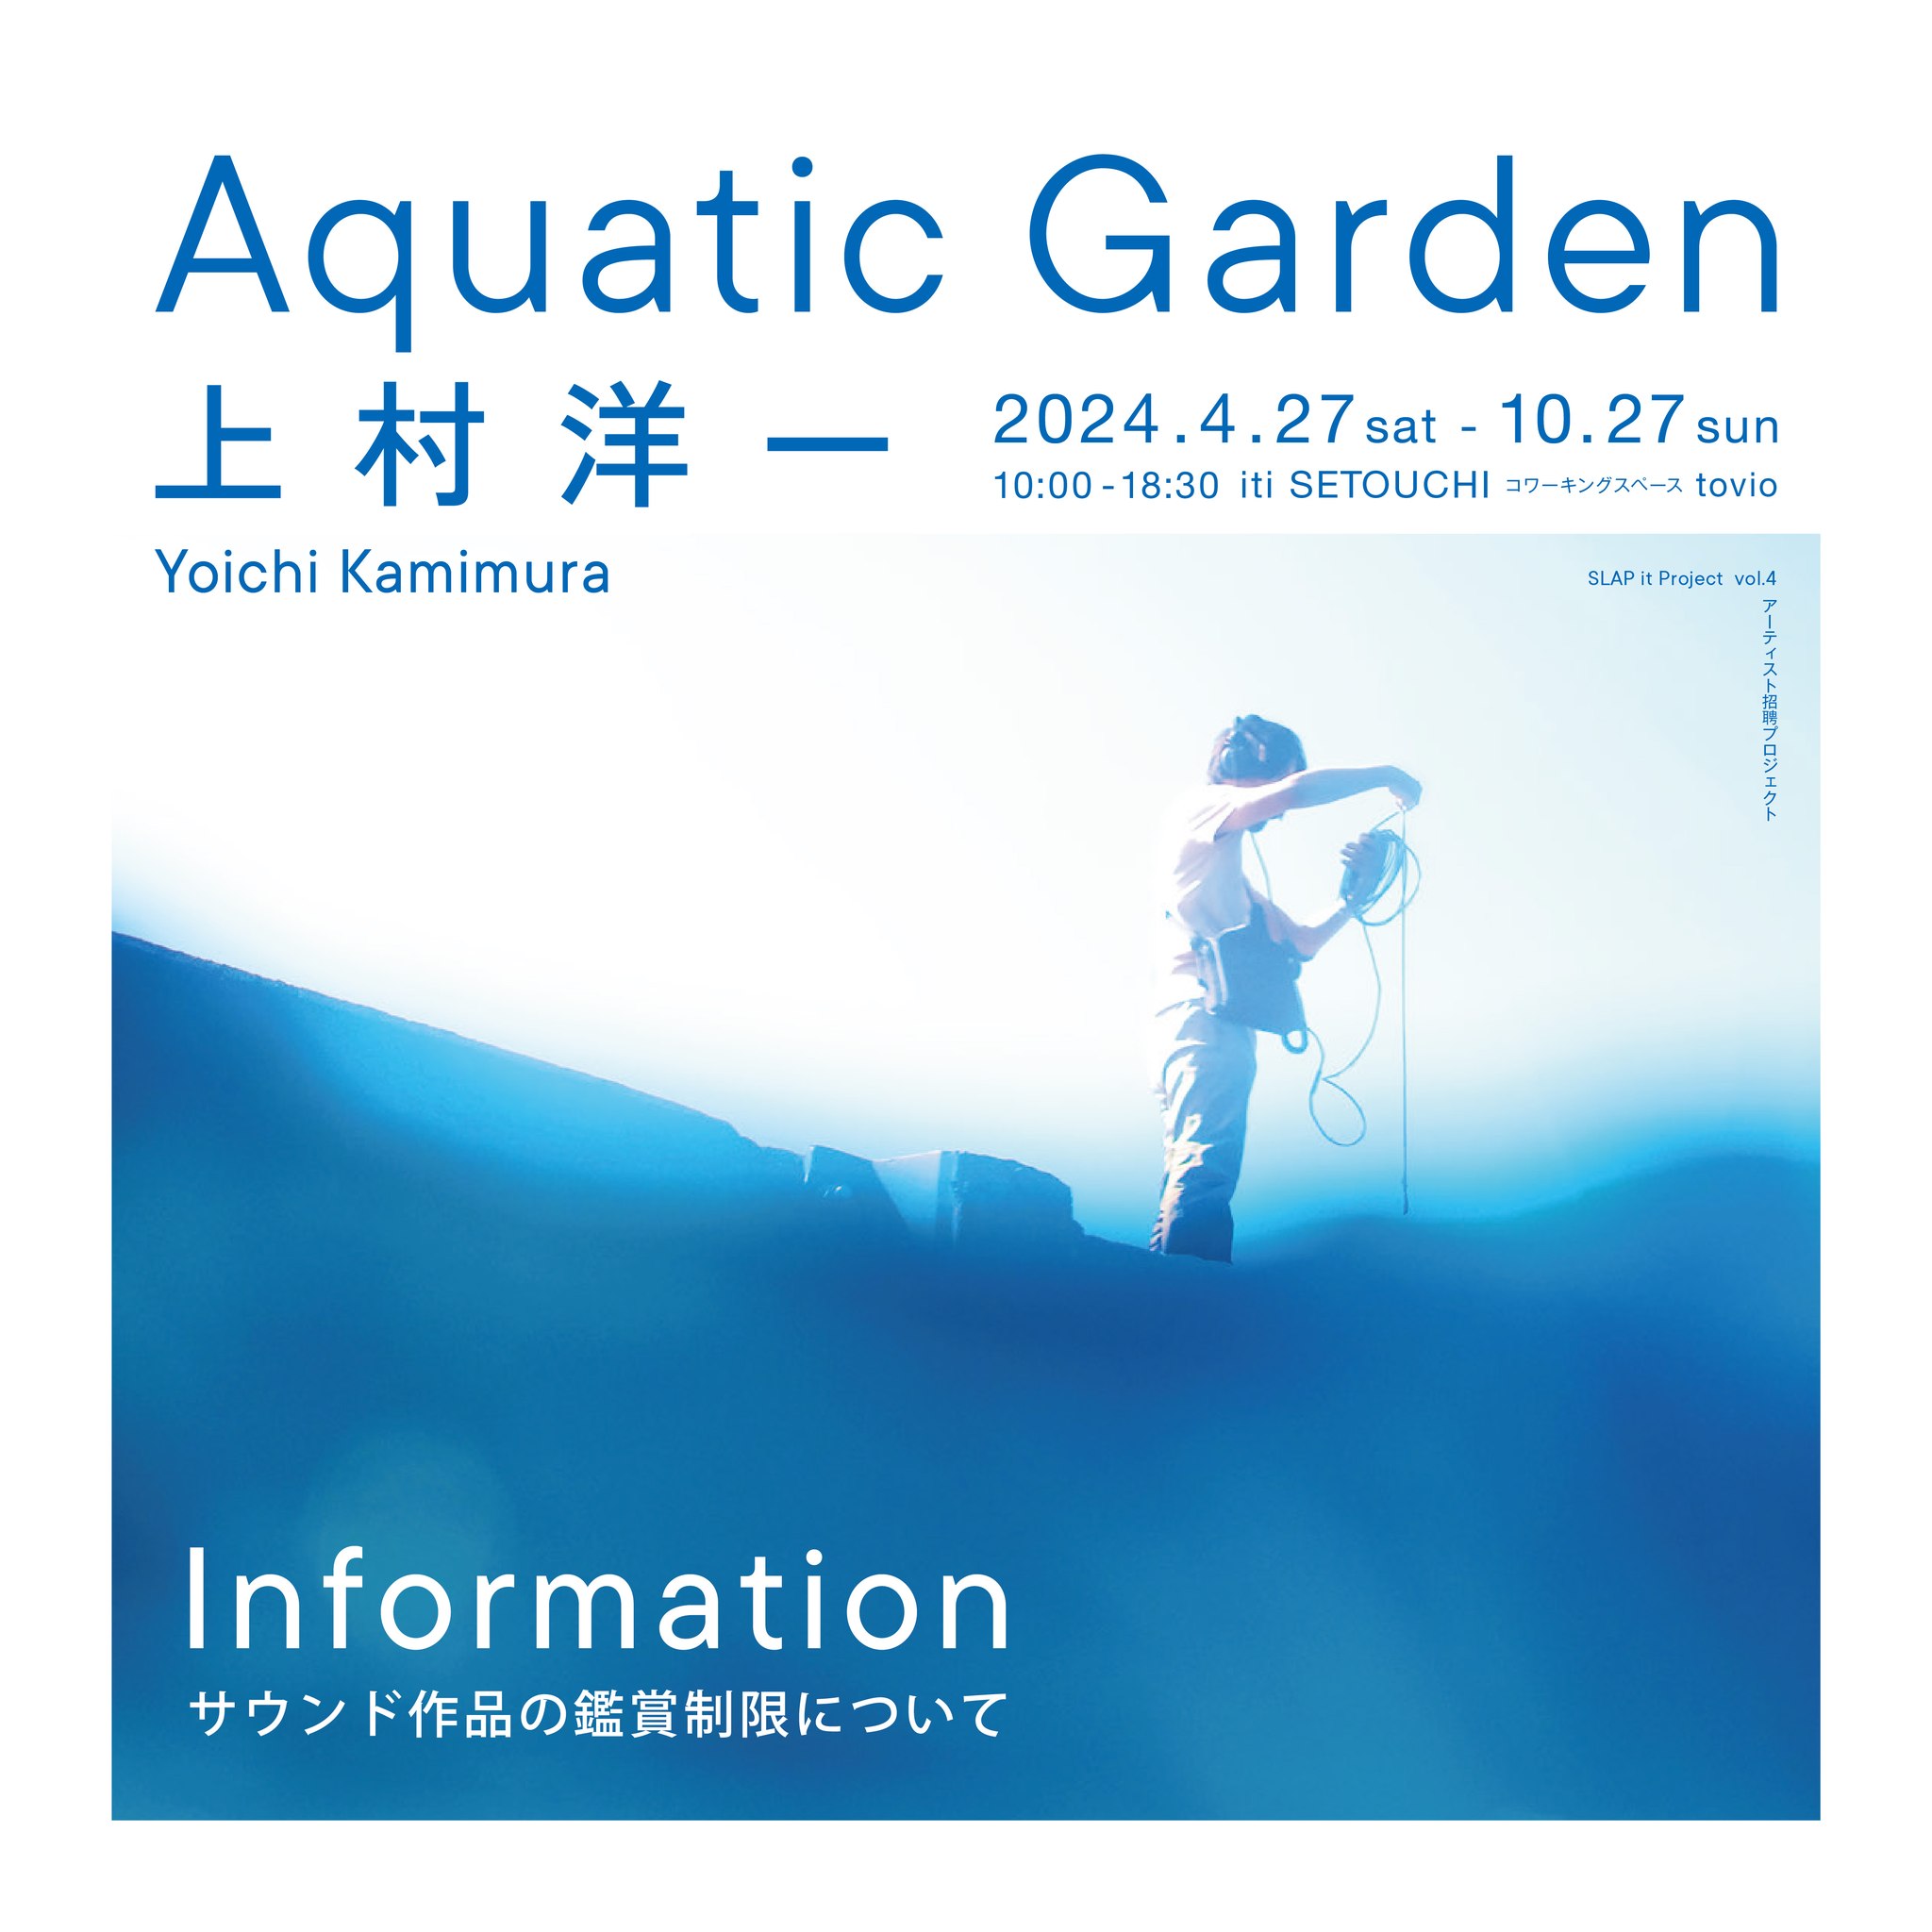 上村洋一「Aquatic Garden」サウンド作品の鑑賞制限について